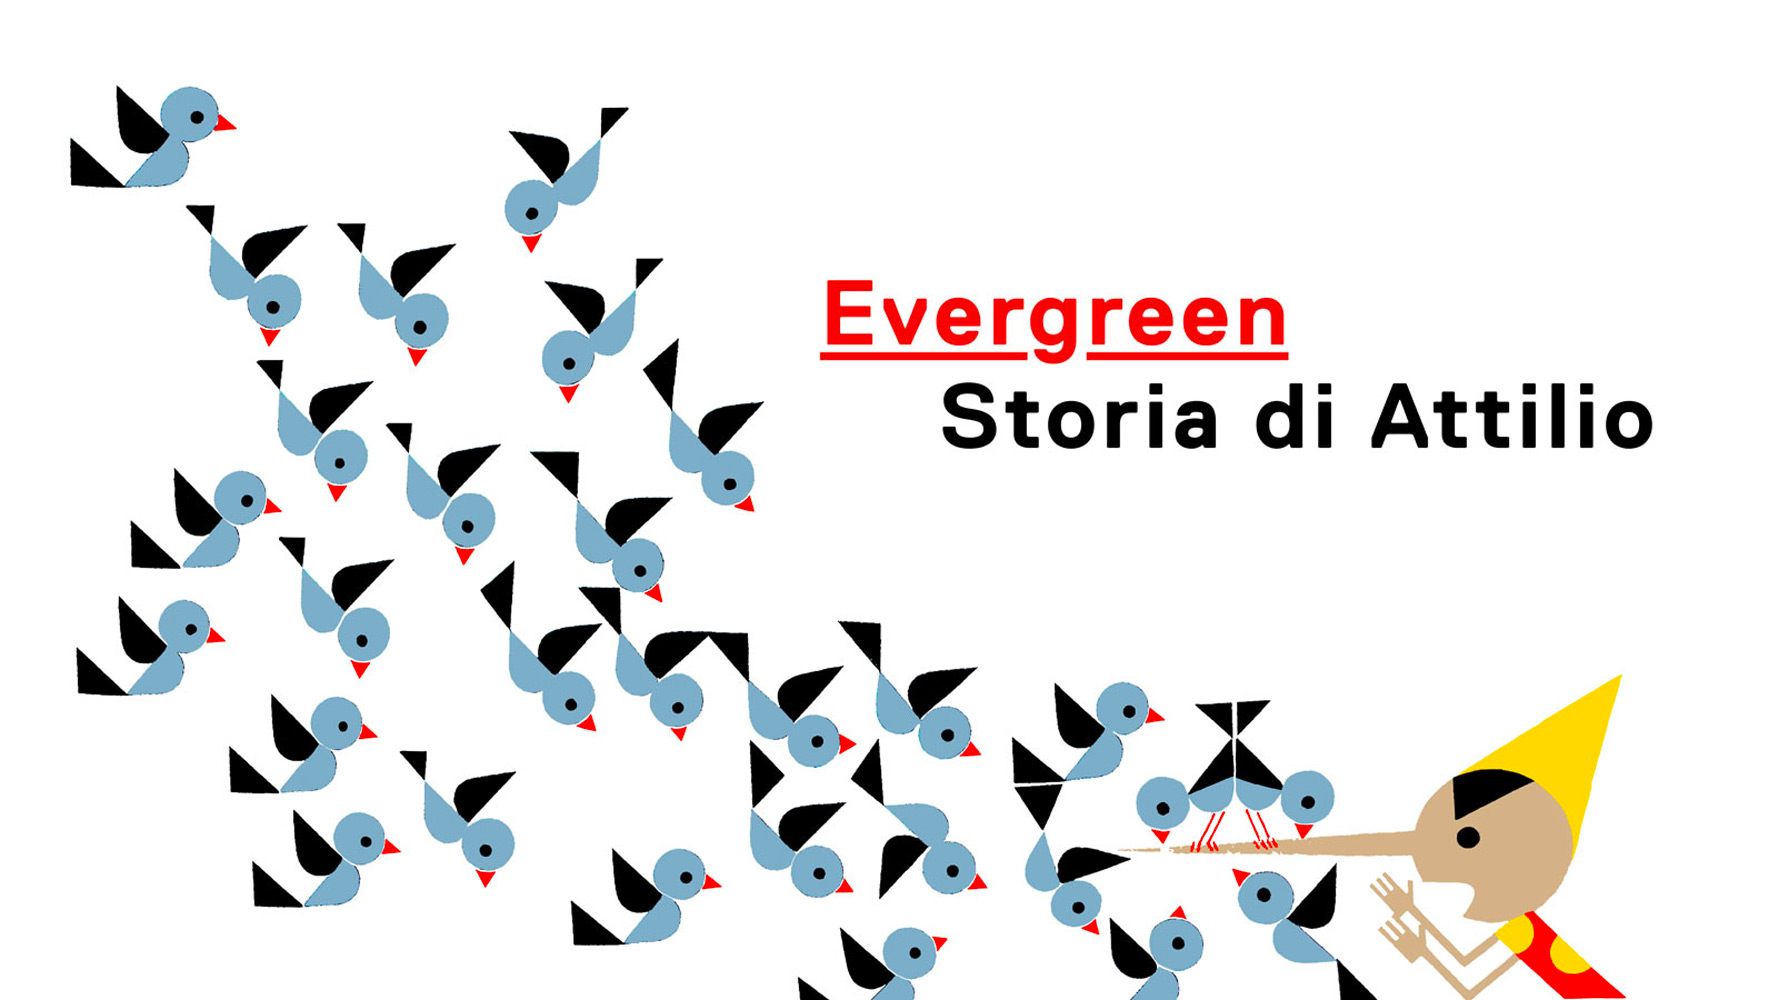 Evergreen. Storia di Attilio